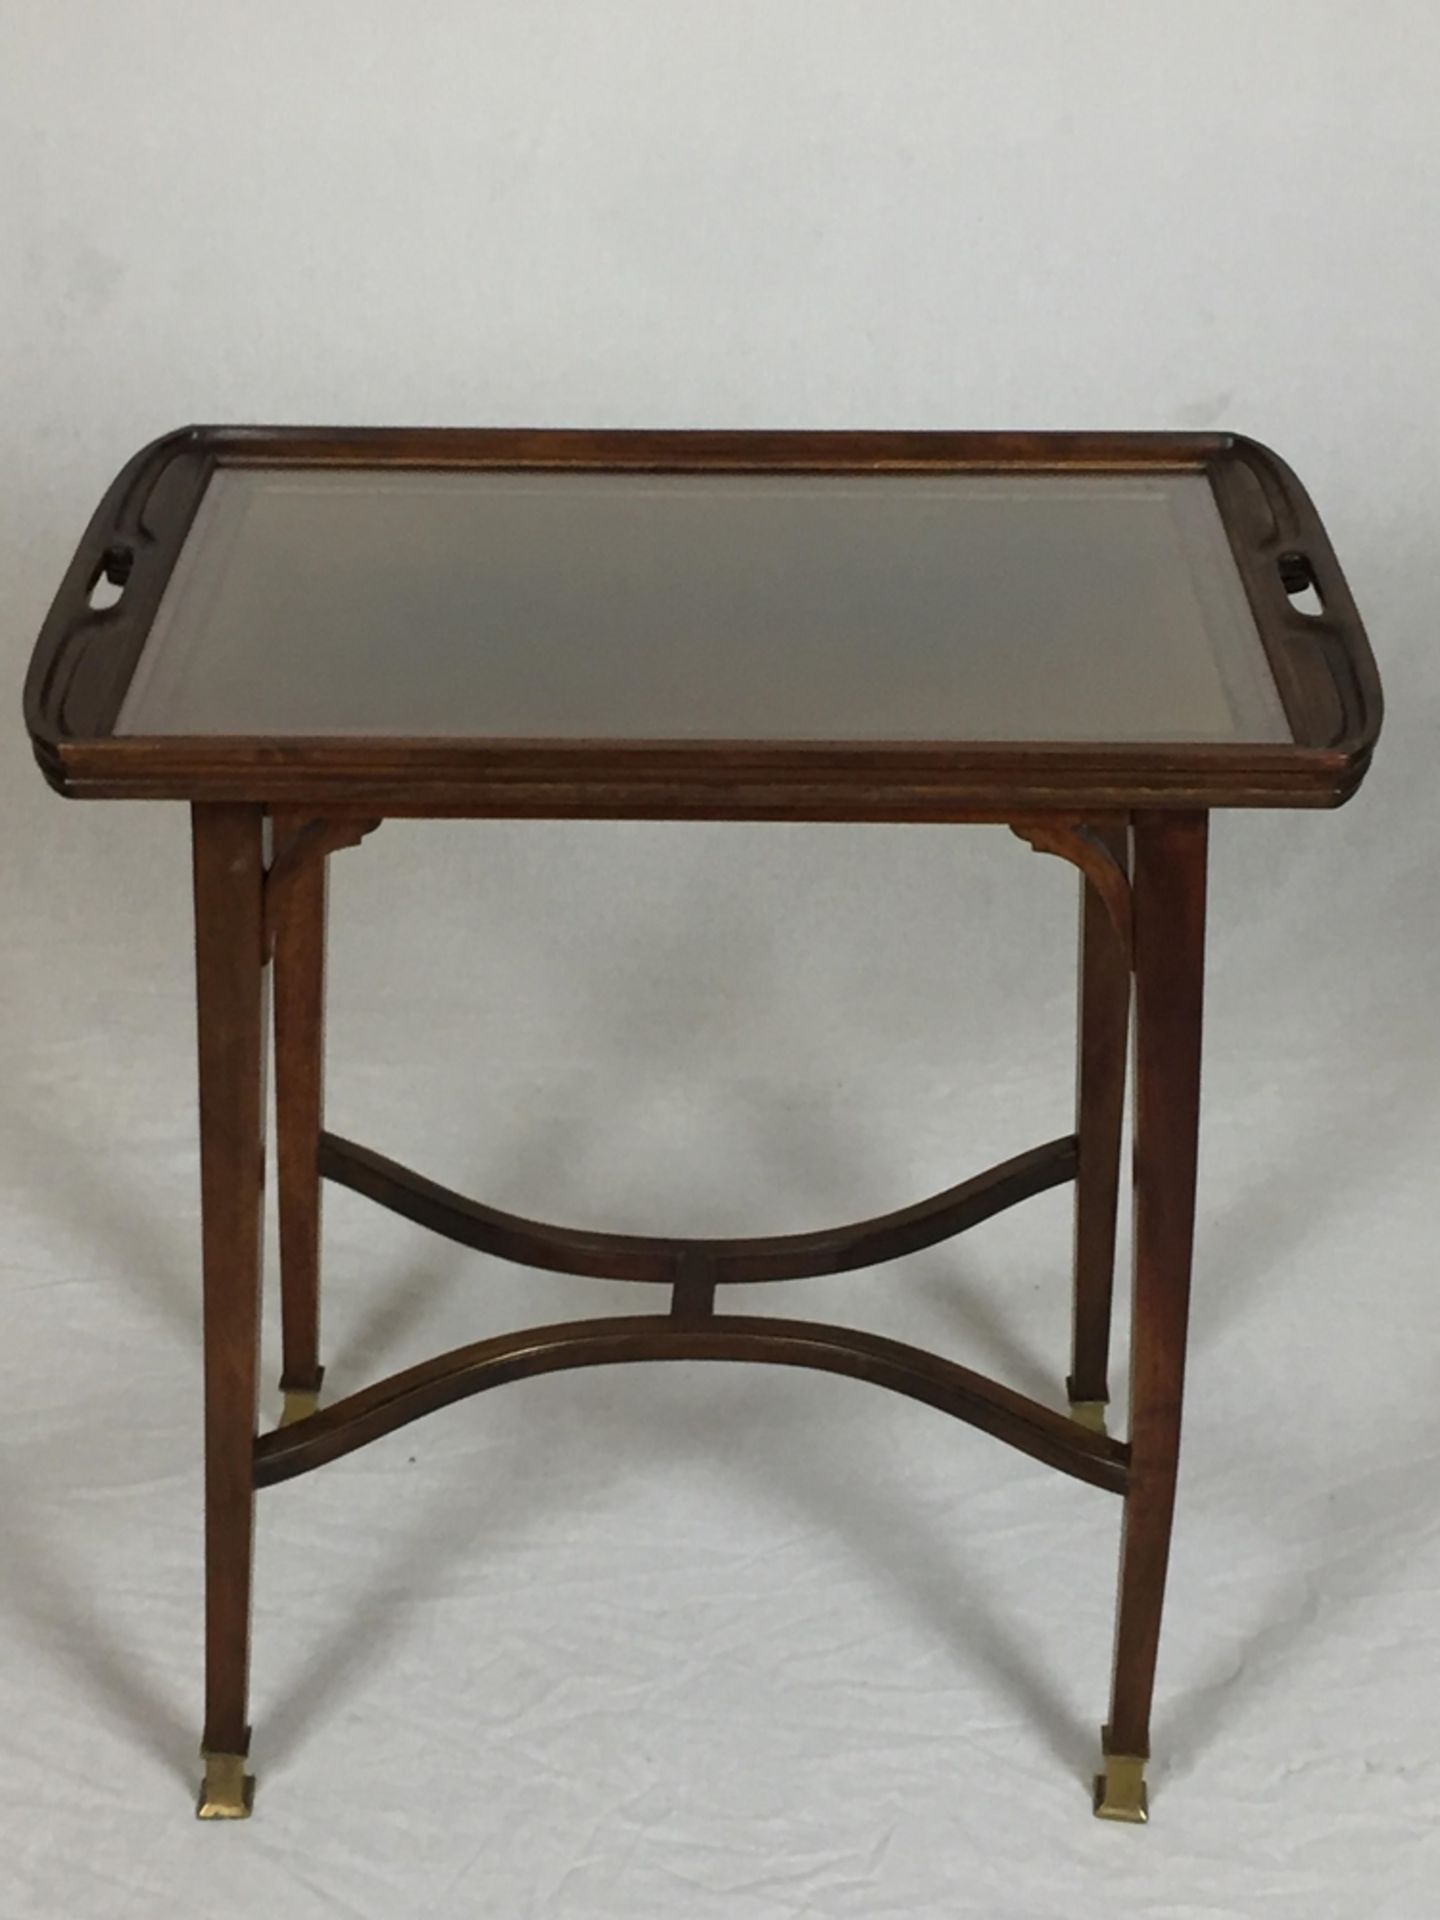 Jugendstil-Tabletttisch - um 1900, Mahagoni, rechteckige Tischplatte auf vier konischen Beinen,